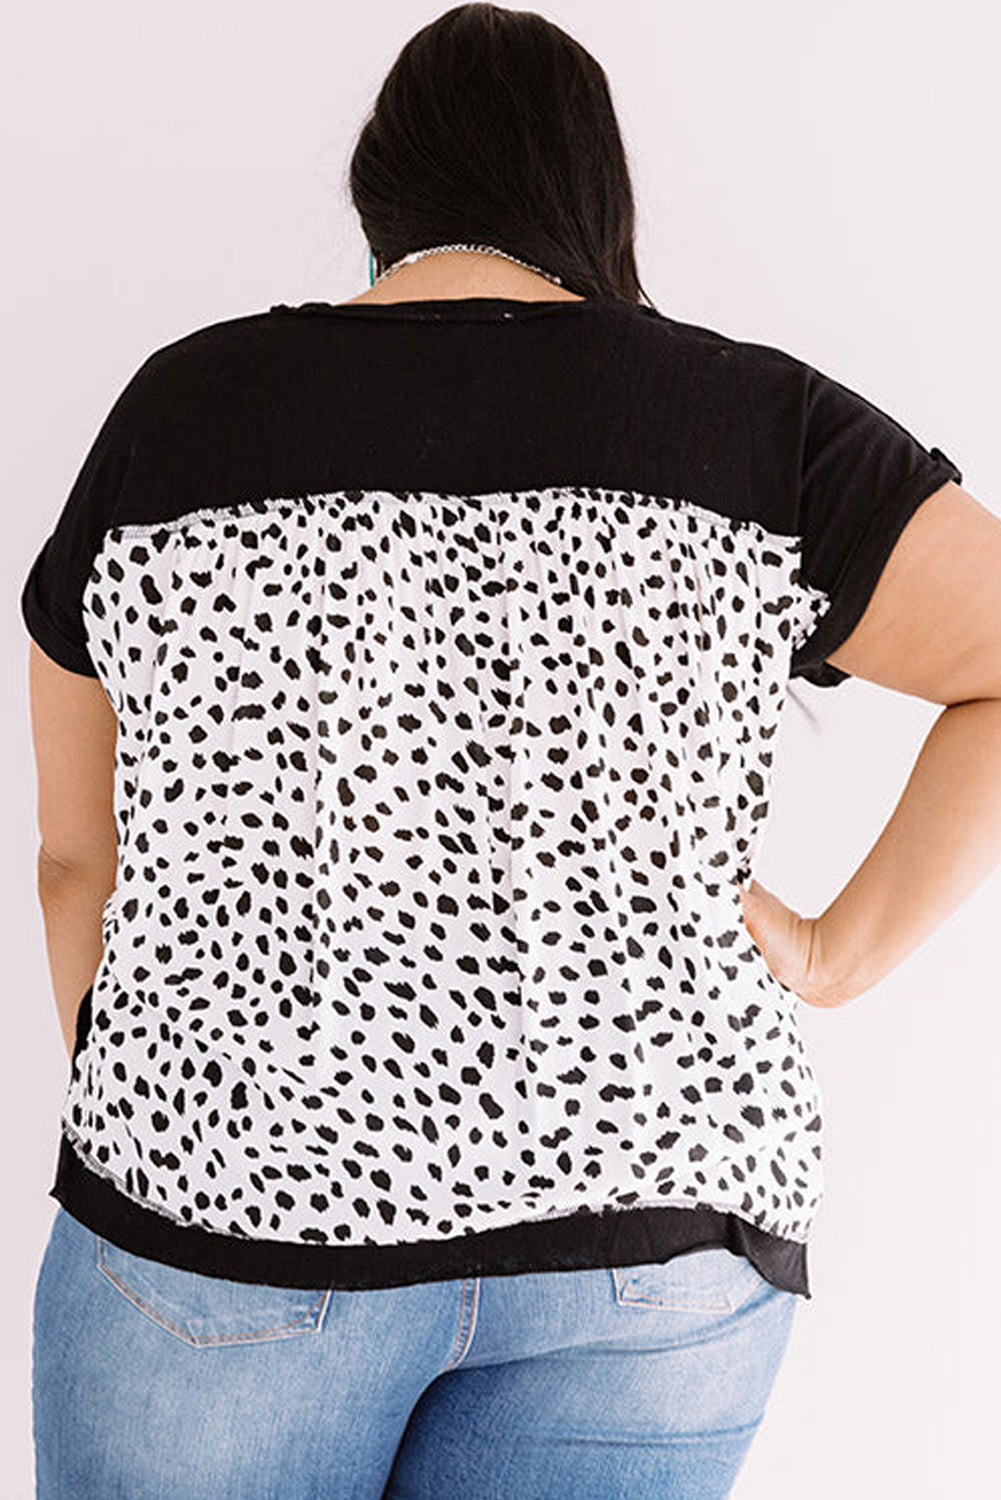 Crna majica kratkih rukava u obliku geparda s smoranim manžetama veće veličine